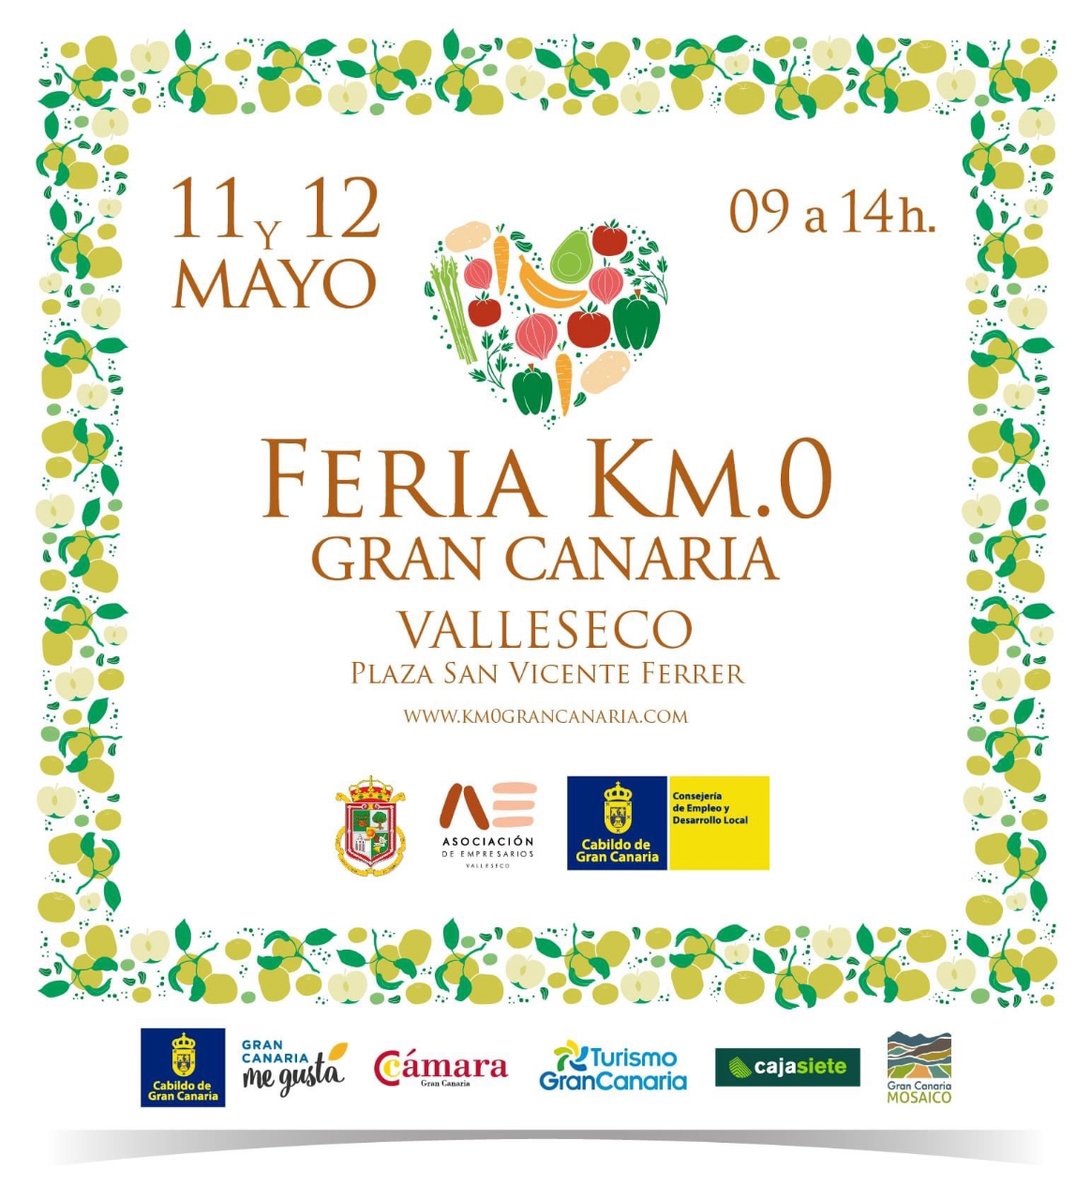 El pueblo de la 🍏 manzana 🍏, Valleseco, acoge este 11 y 12 de mayo la Feria Km0 Gran Canaria con varias decenas de #productores. 

Alegra esa cara, que ya tienes plan para el #findesemana 😉!!